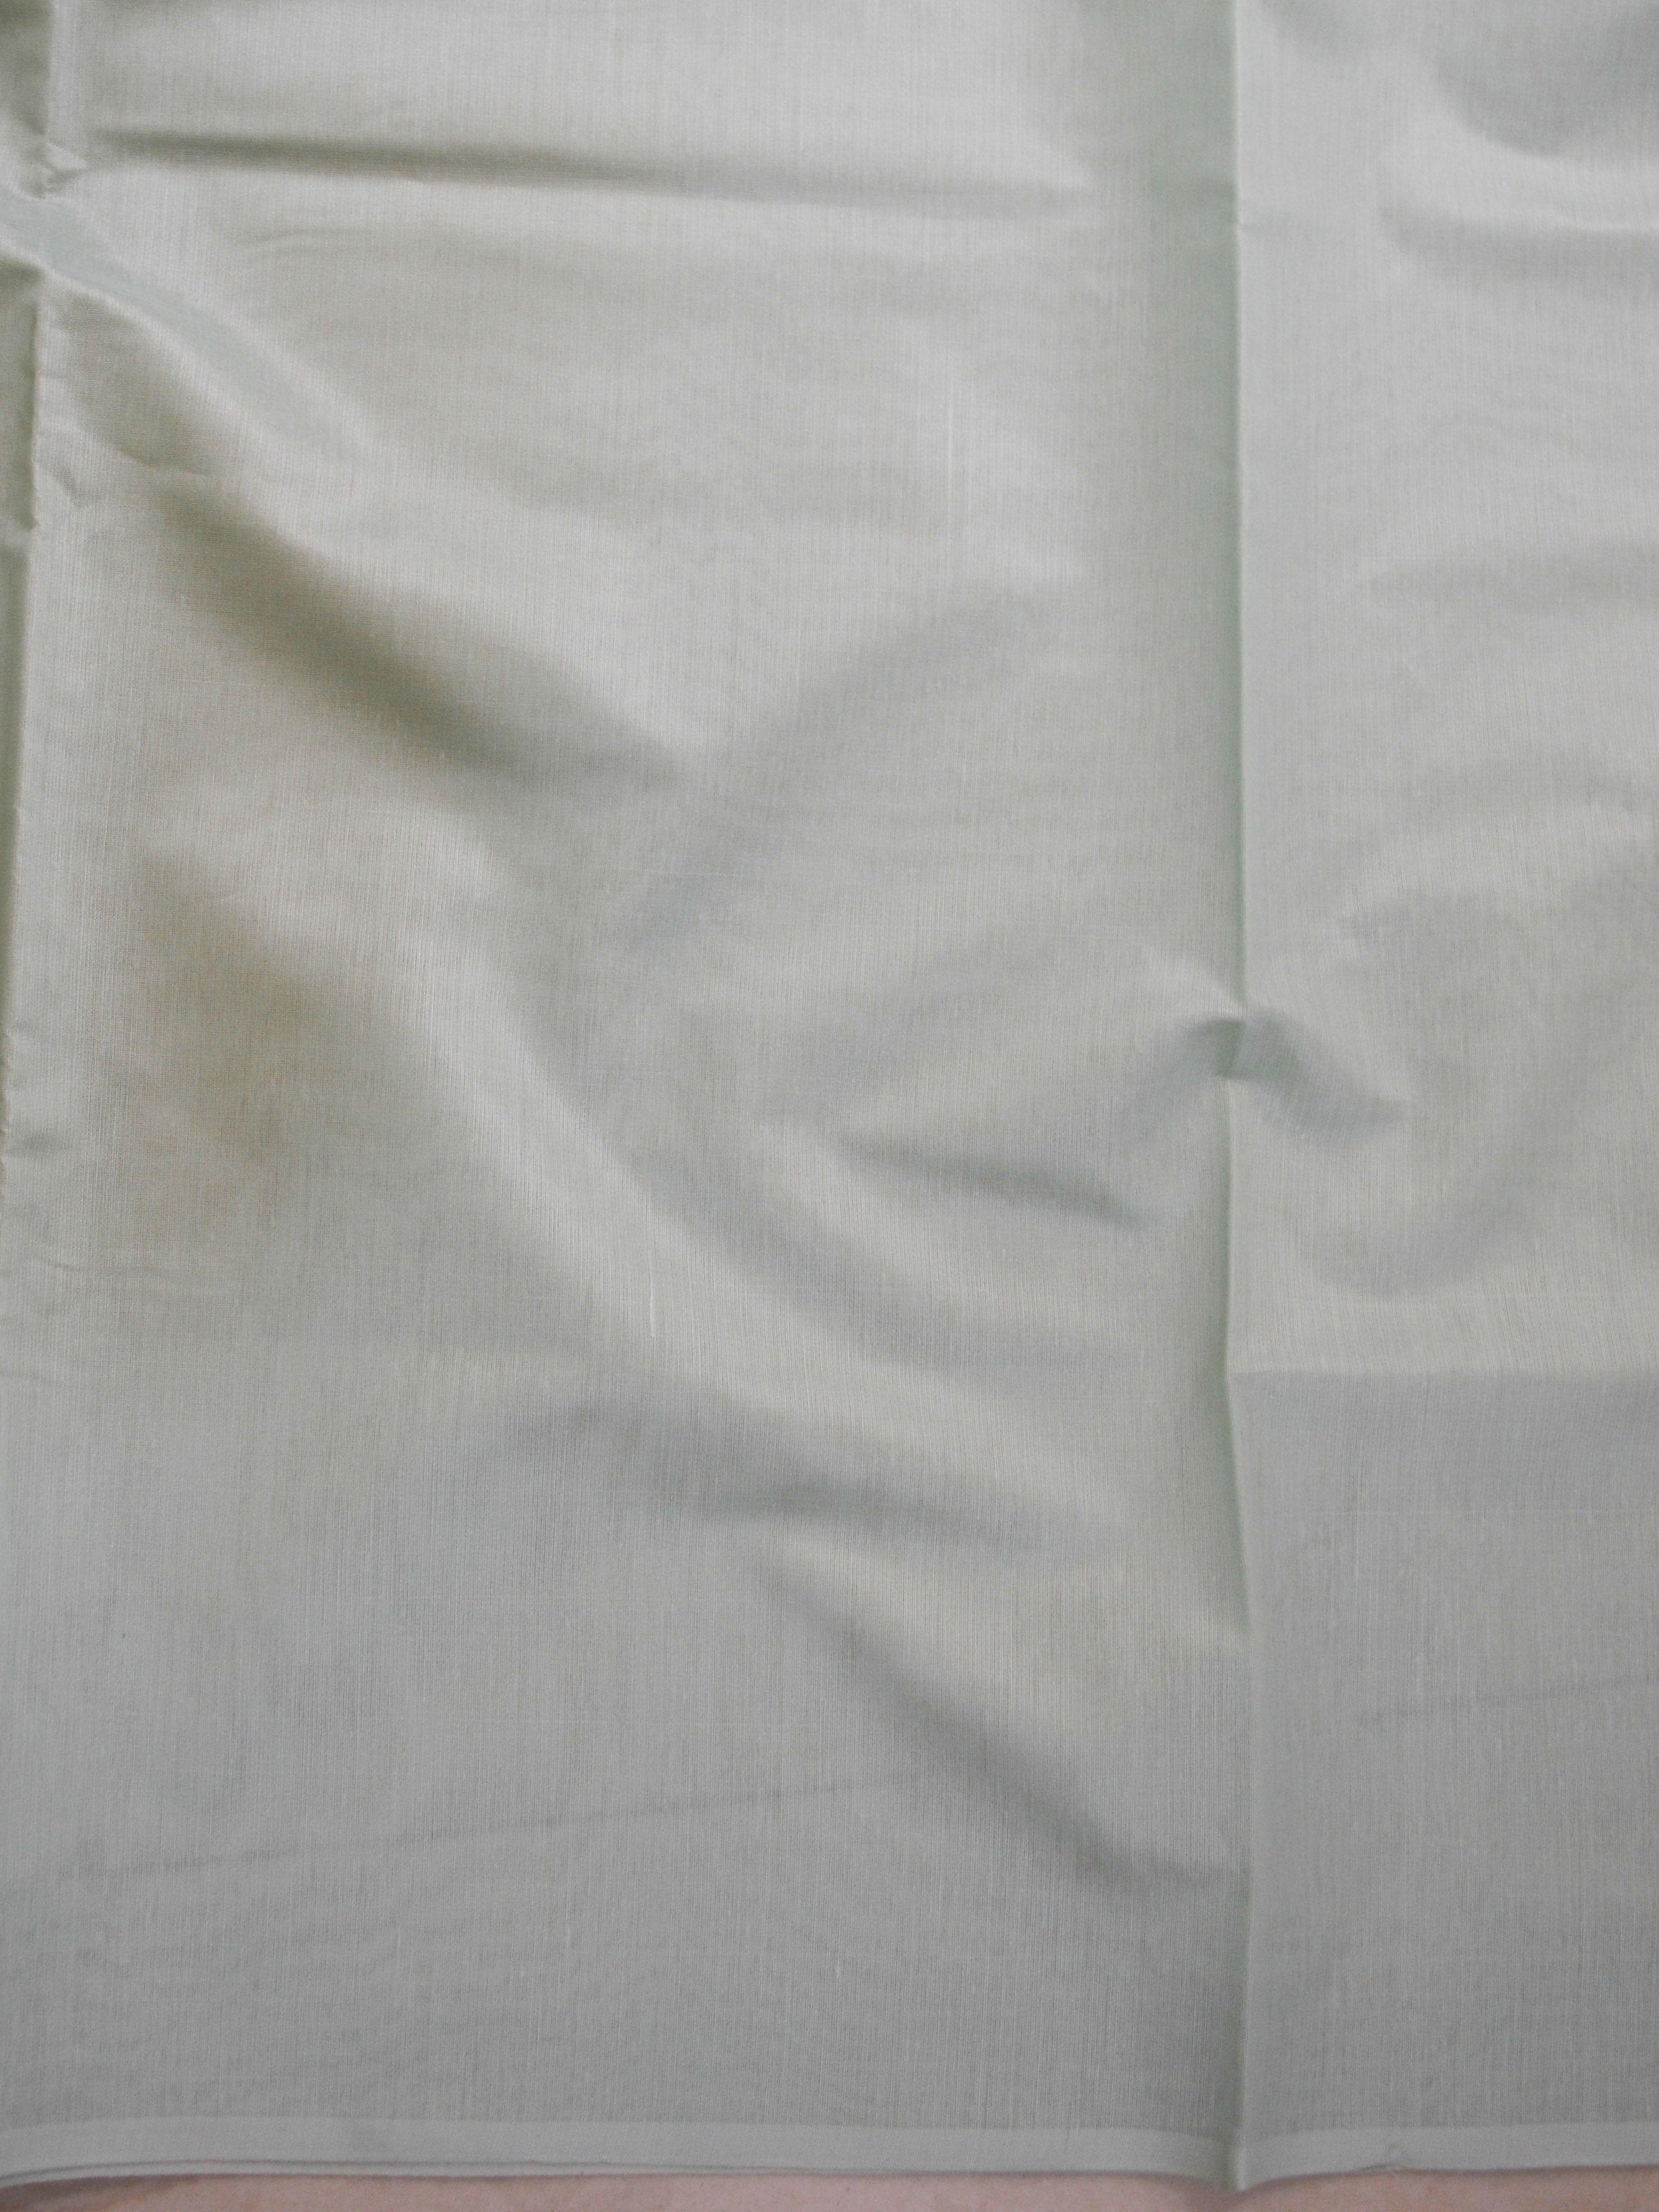 Banarasee Cotton Silk Salwar Kameez Fabric With Zari Work-Green & Peach